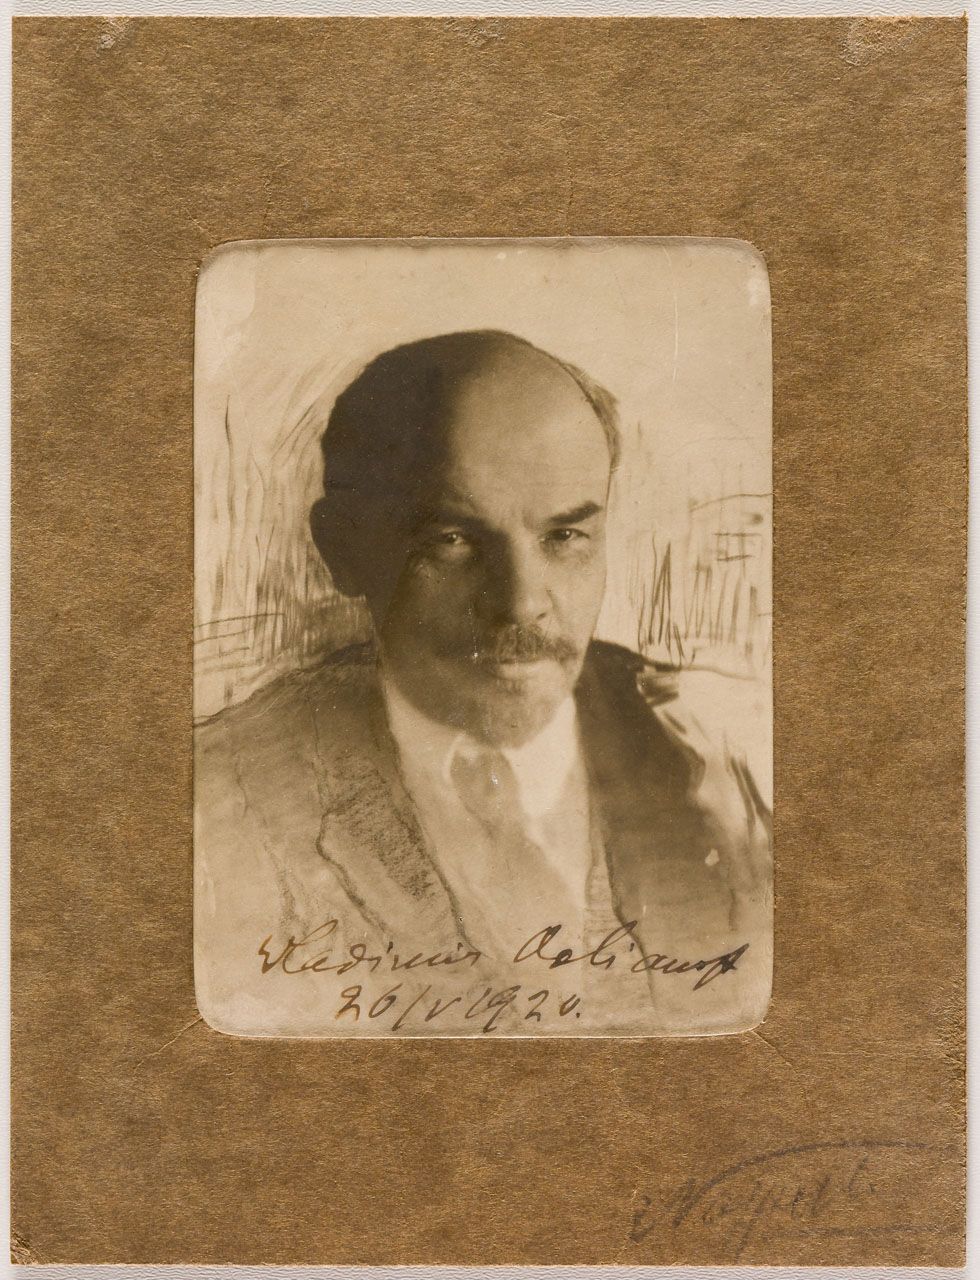 SEHR SELTENES SIGNIERTES PHOTO VON LENIN Photographie signée par Lénine avec Vla&hellip;